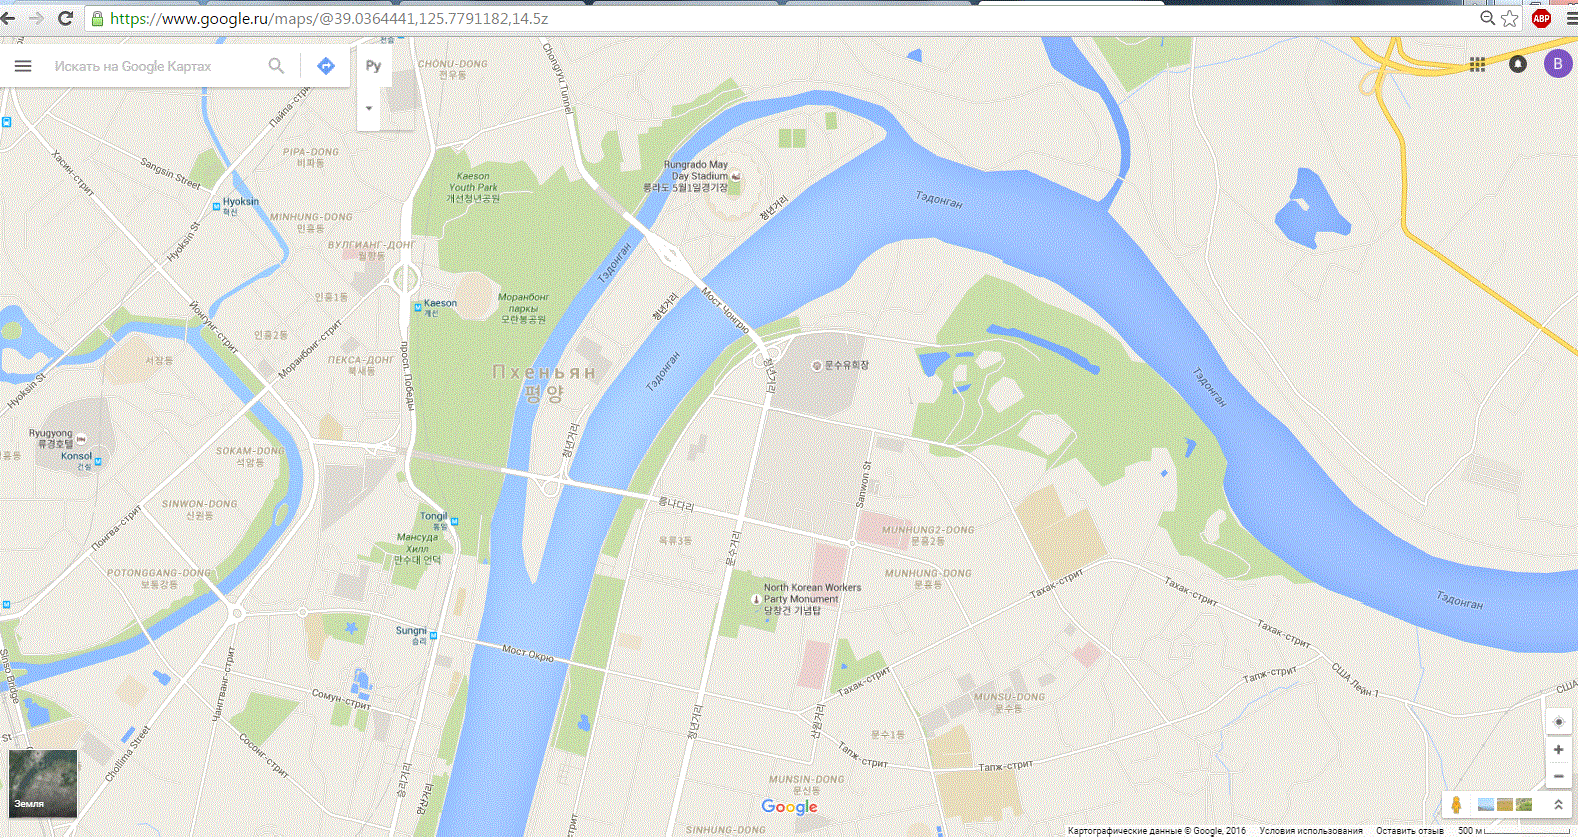 Гугл карты ленина. Гугл карты. Гуй карта. Карта Москвы Google Maps. Карта Москвы гугл карты.